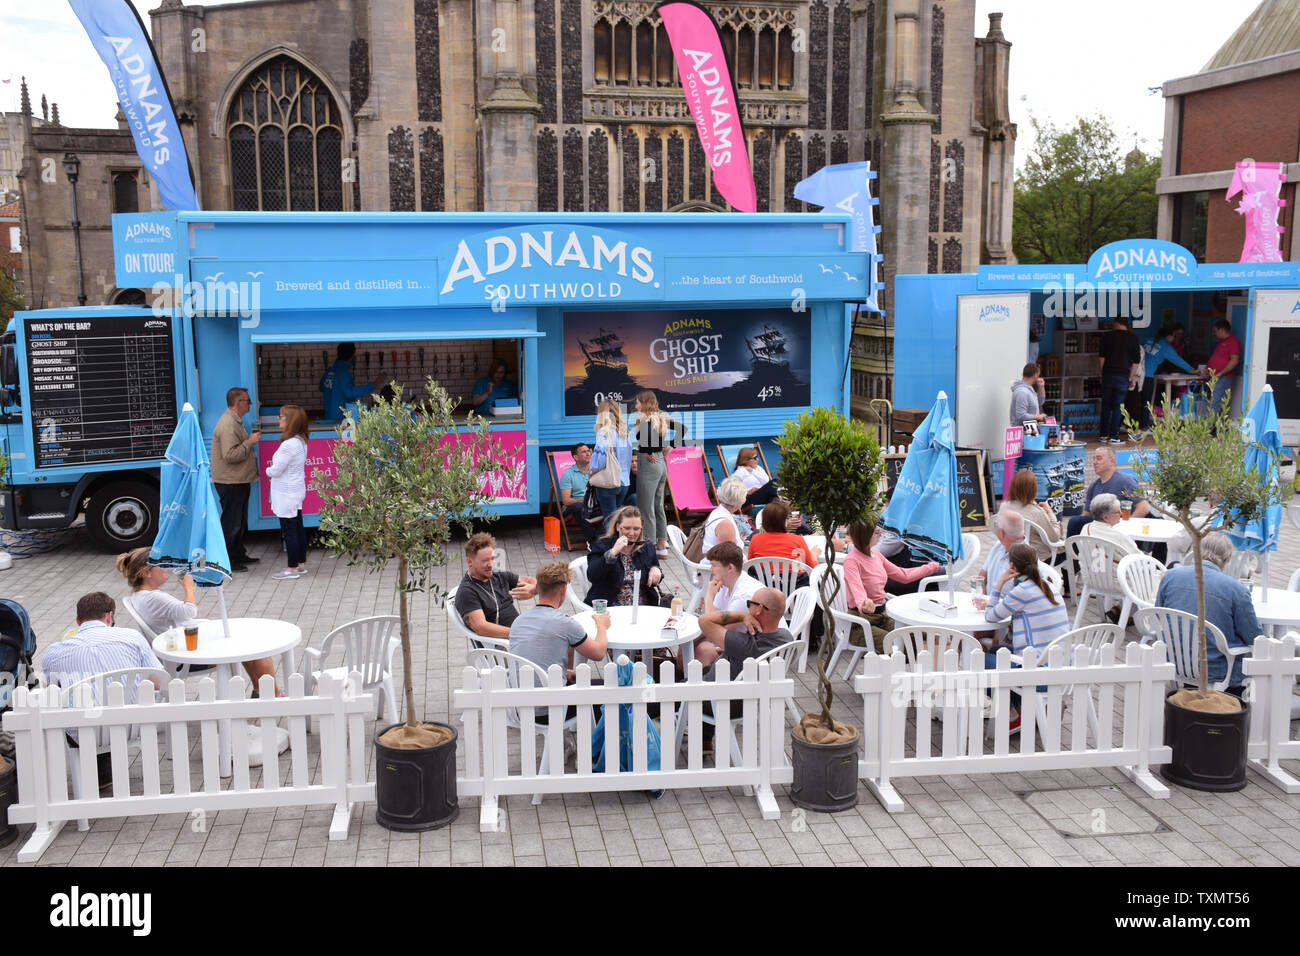 Adnams barre contextuelle à Norwich Festival Food & Drink ayant lieu dans et autour du Forum, 16 juin 2019. Norwich UK Banque D'Images